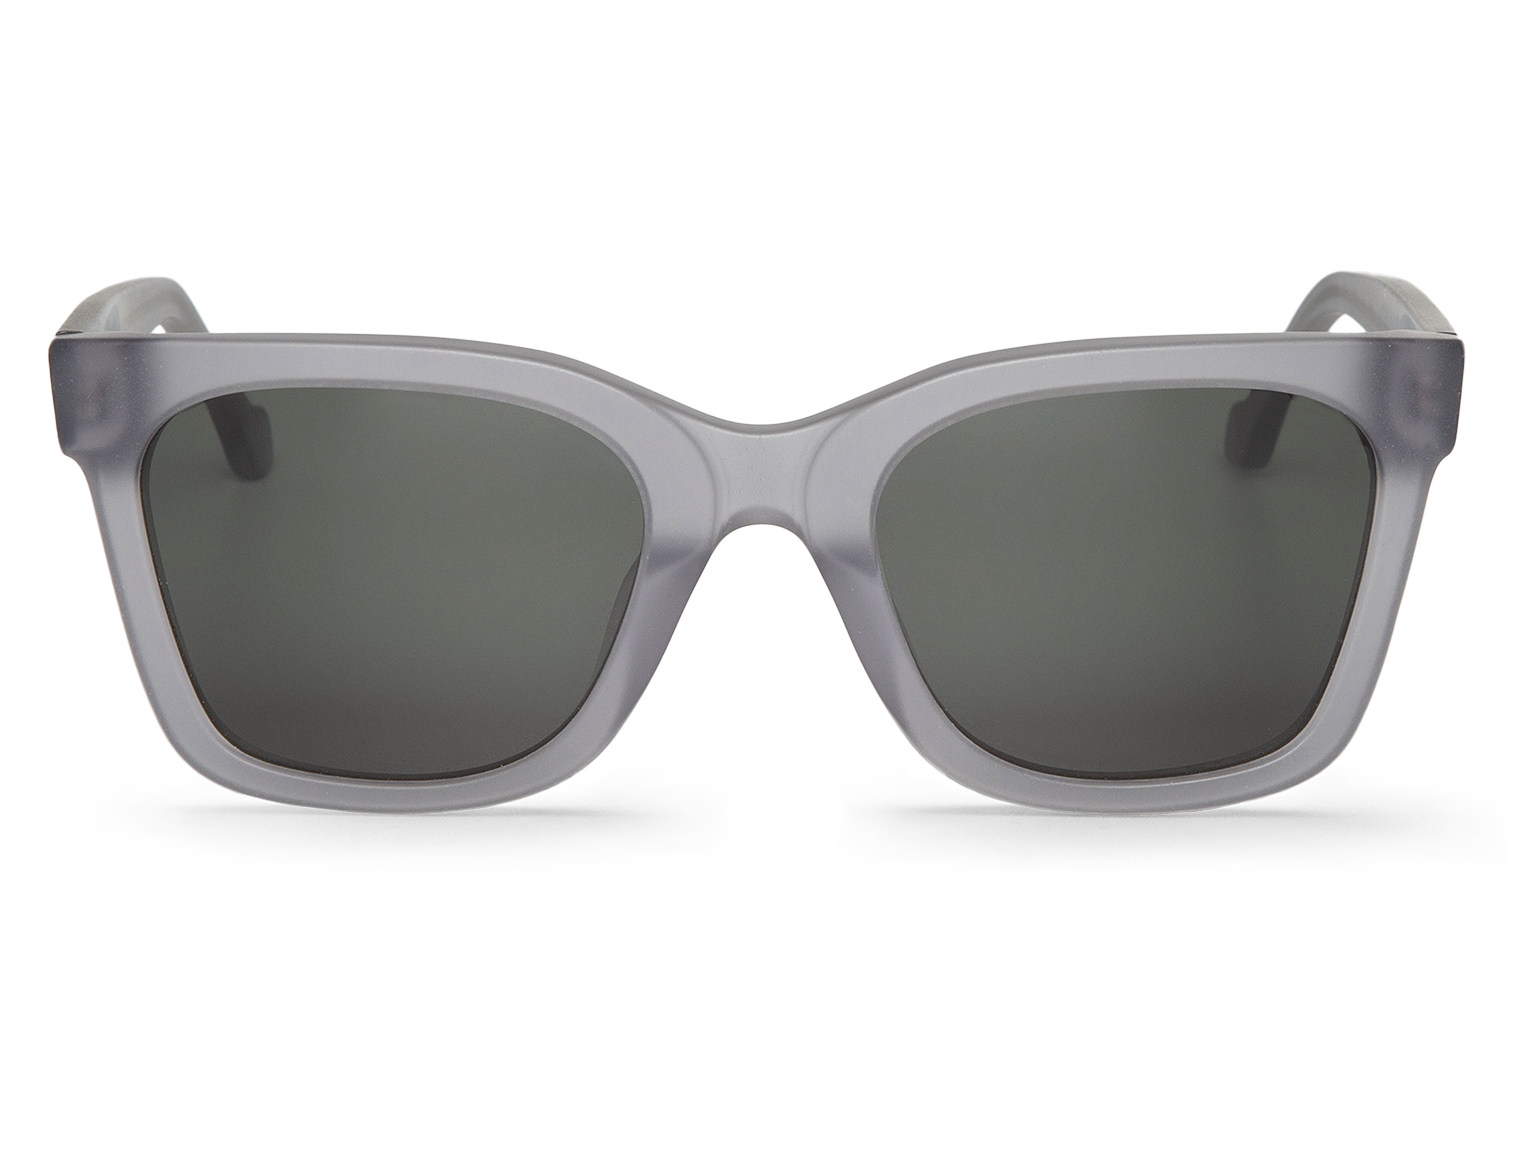 MR BOHO Matte Ash Gartner Sunglasses with Classical Lenses